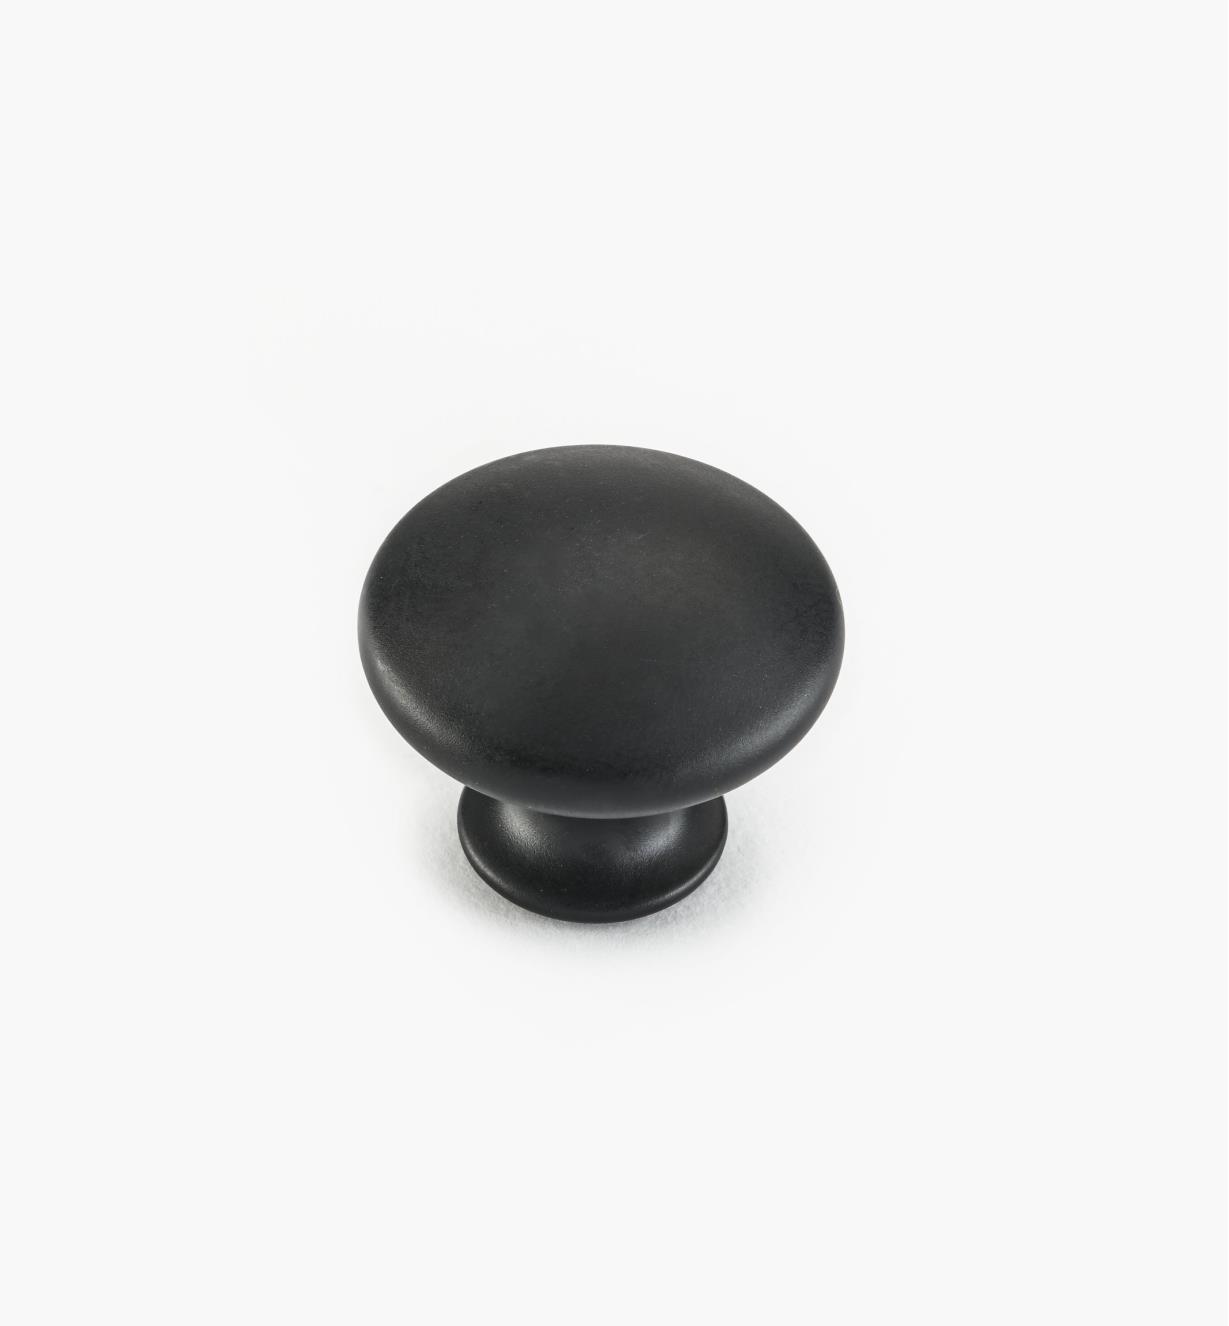 02W4305 - Bouton collection classique, 1 po x 3/4 po, fini noir